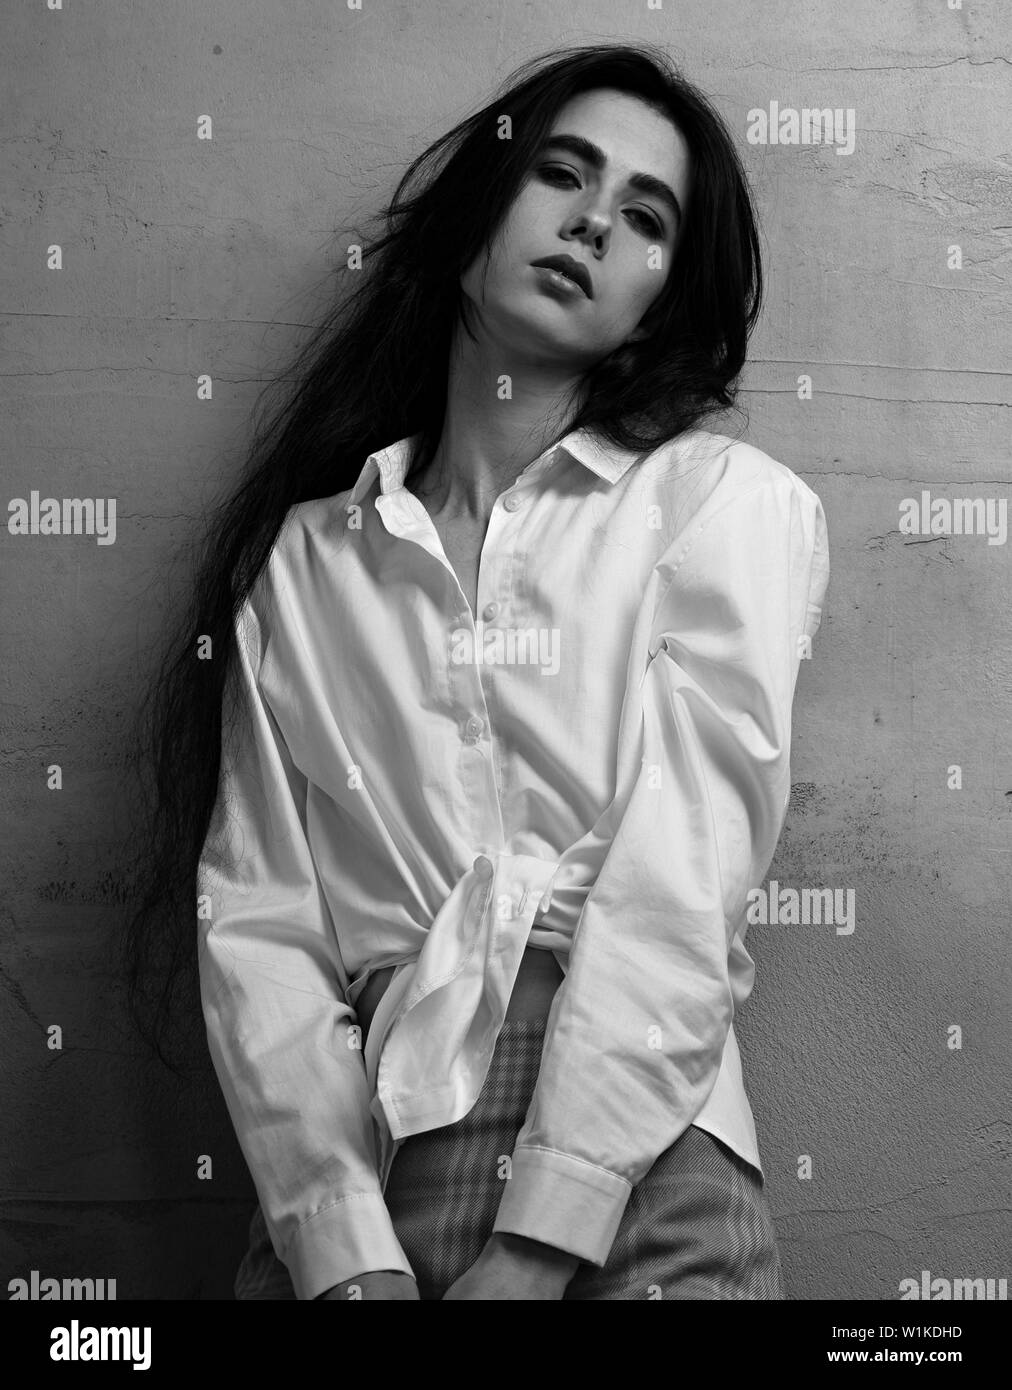 Traurig Depression young woman in Red Rock und weißes Hemd auf graue Wand studio Hintergrund posiert. Portrait von natürlichen Ausdruck Gesicht. Nahaufnahme. Stockfoto